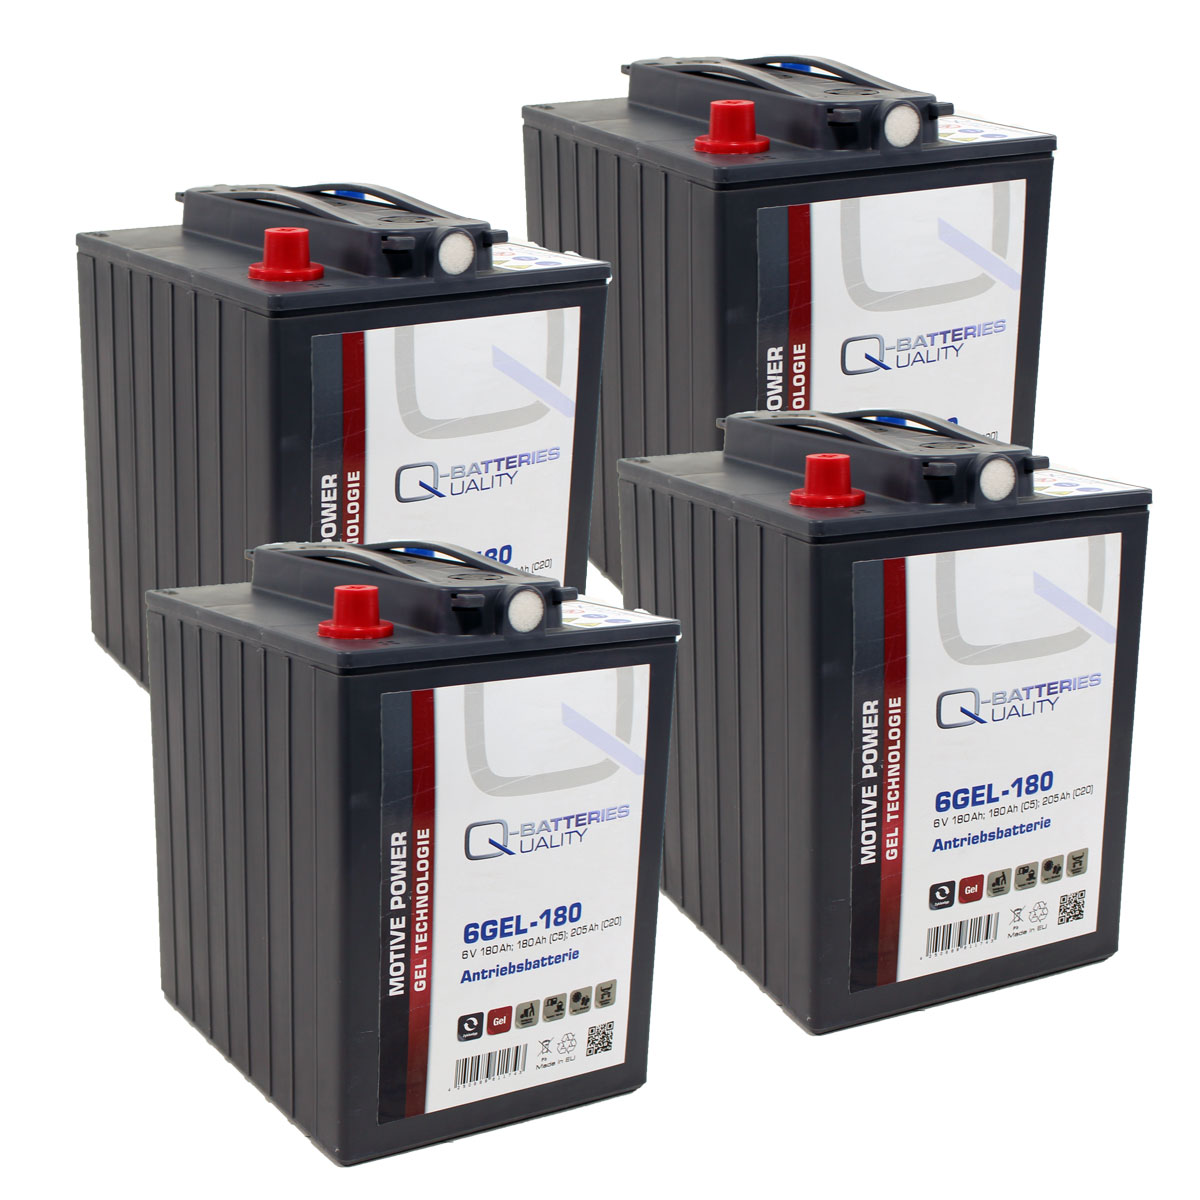 Ersatzakku für Hako Reinigungsmaschinen Gel Batterie 24V 180Ah (4 Stück)